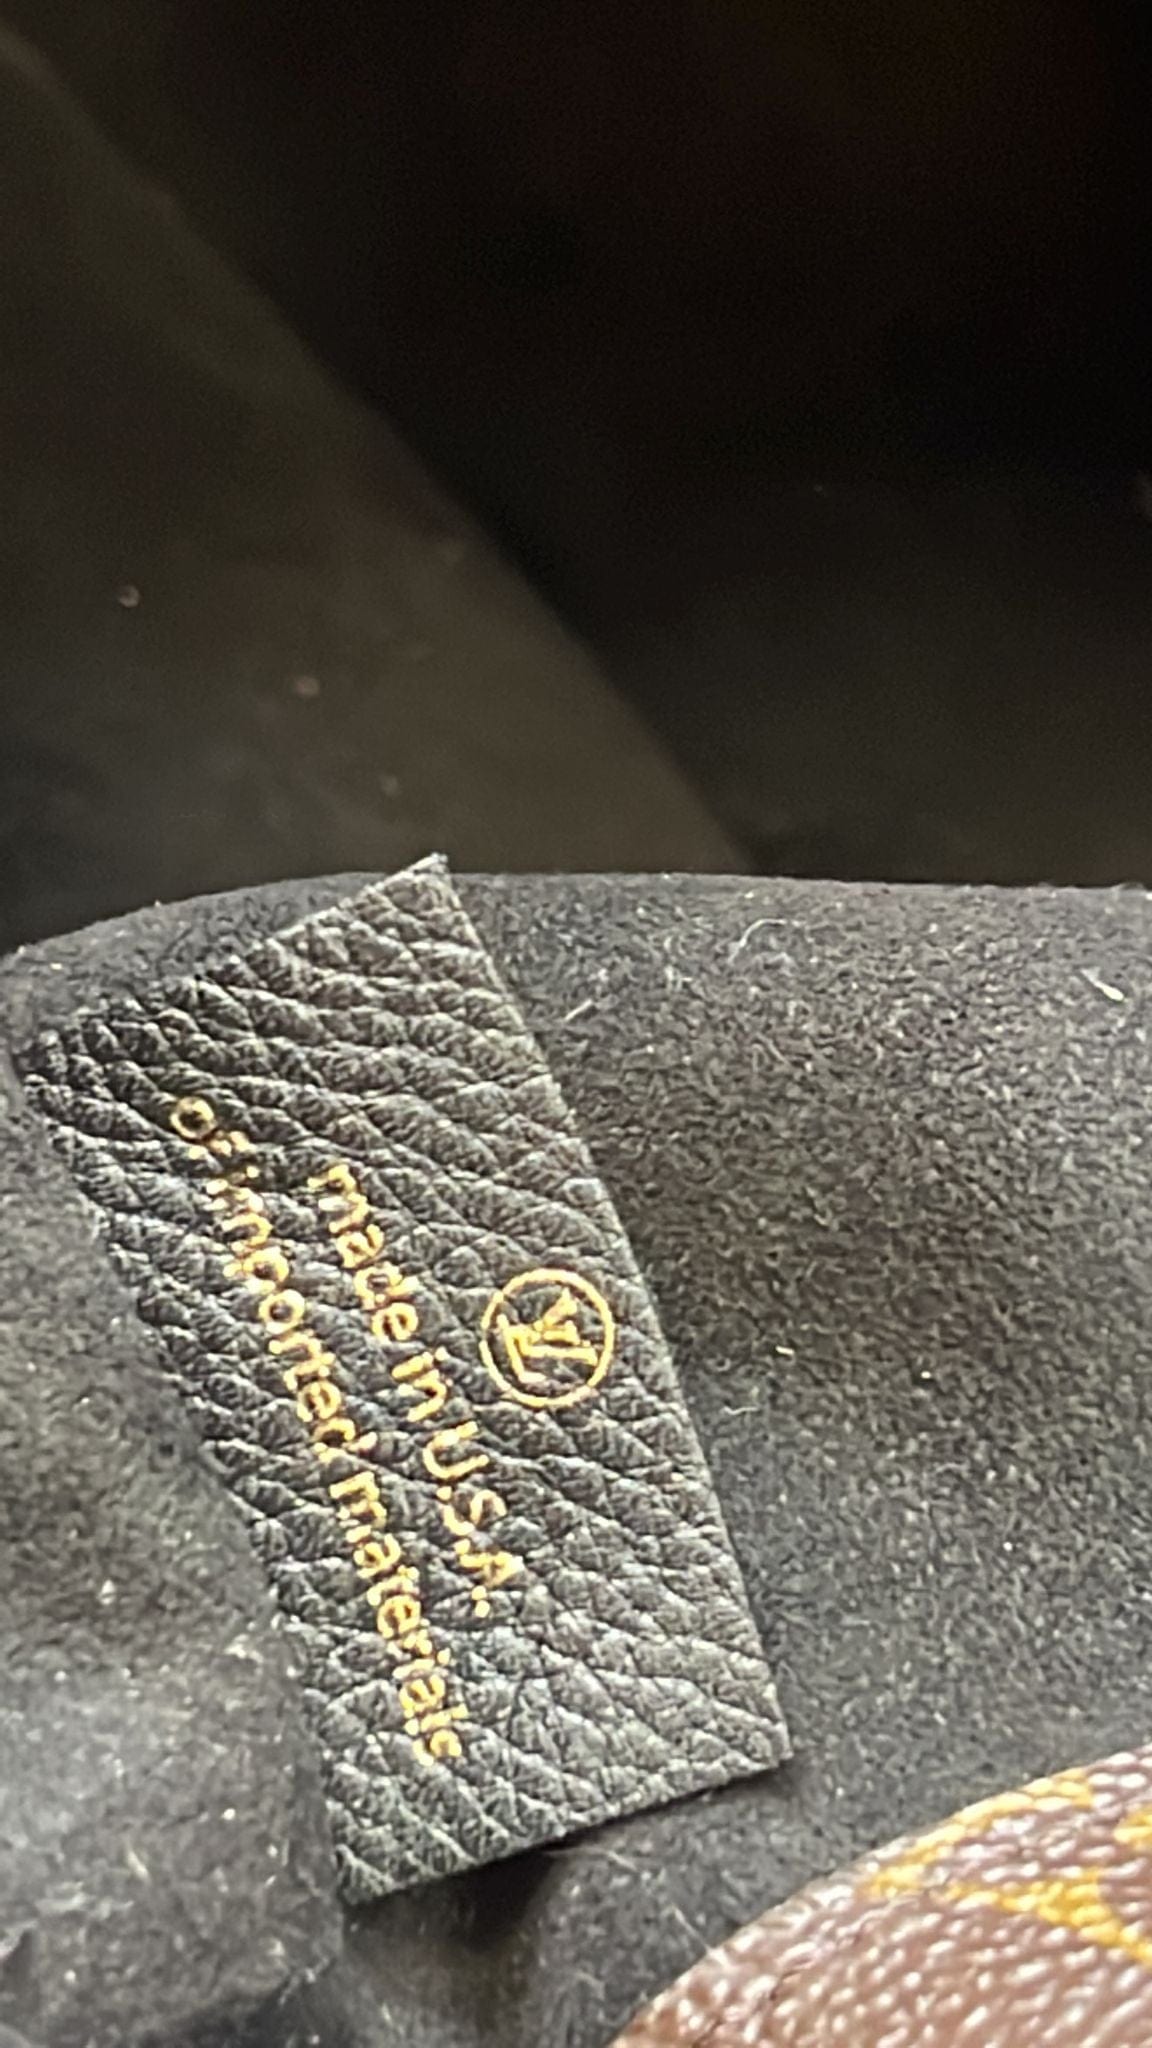 Louis Vuitton Cité Brown Canvas Shoulder Bag (Pre-Owned) - ShopStyle